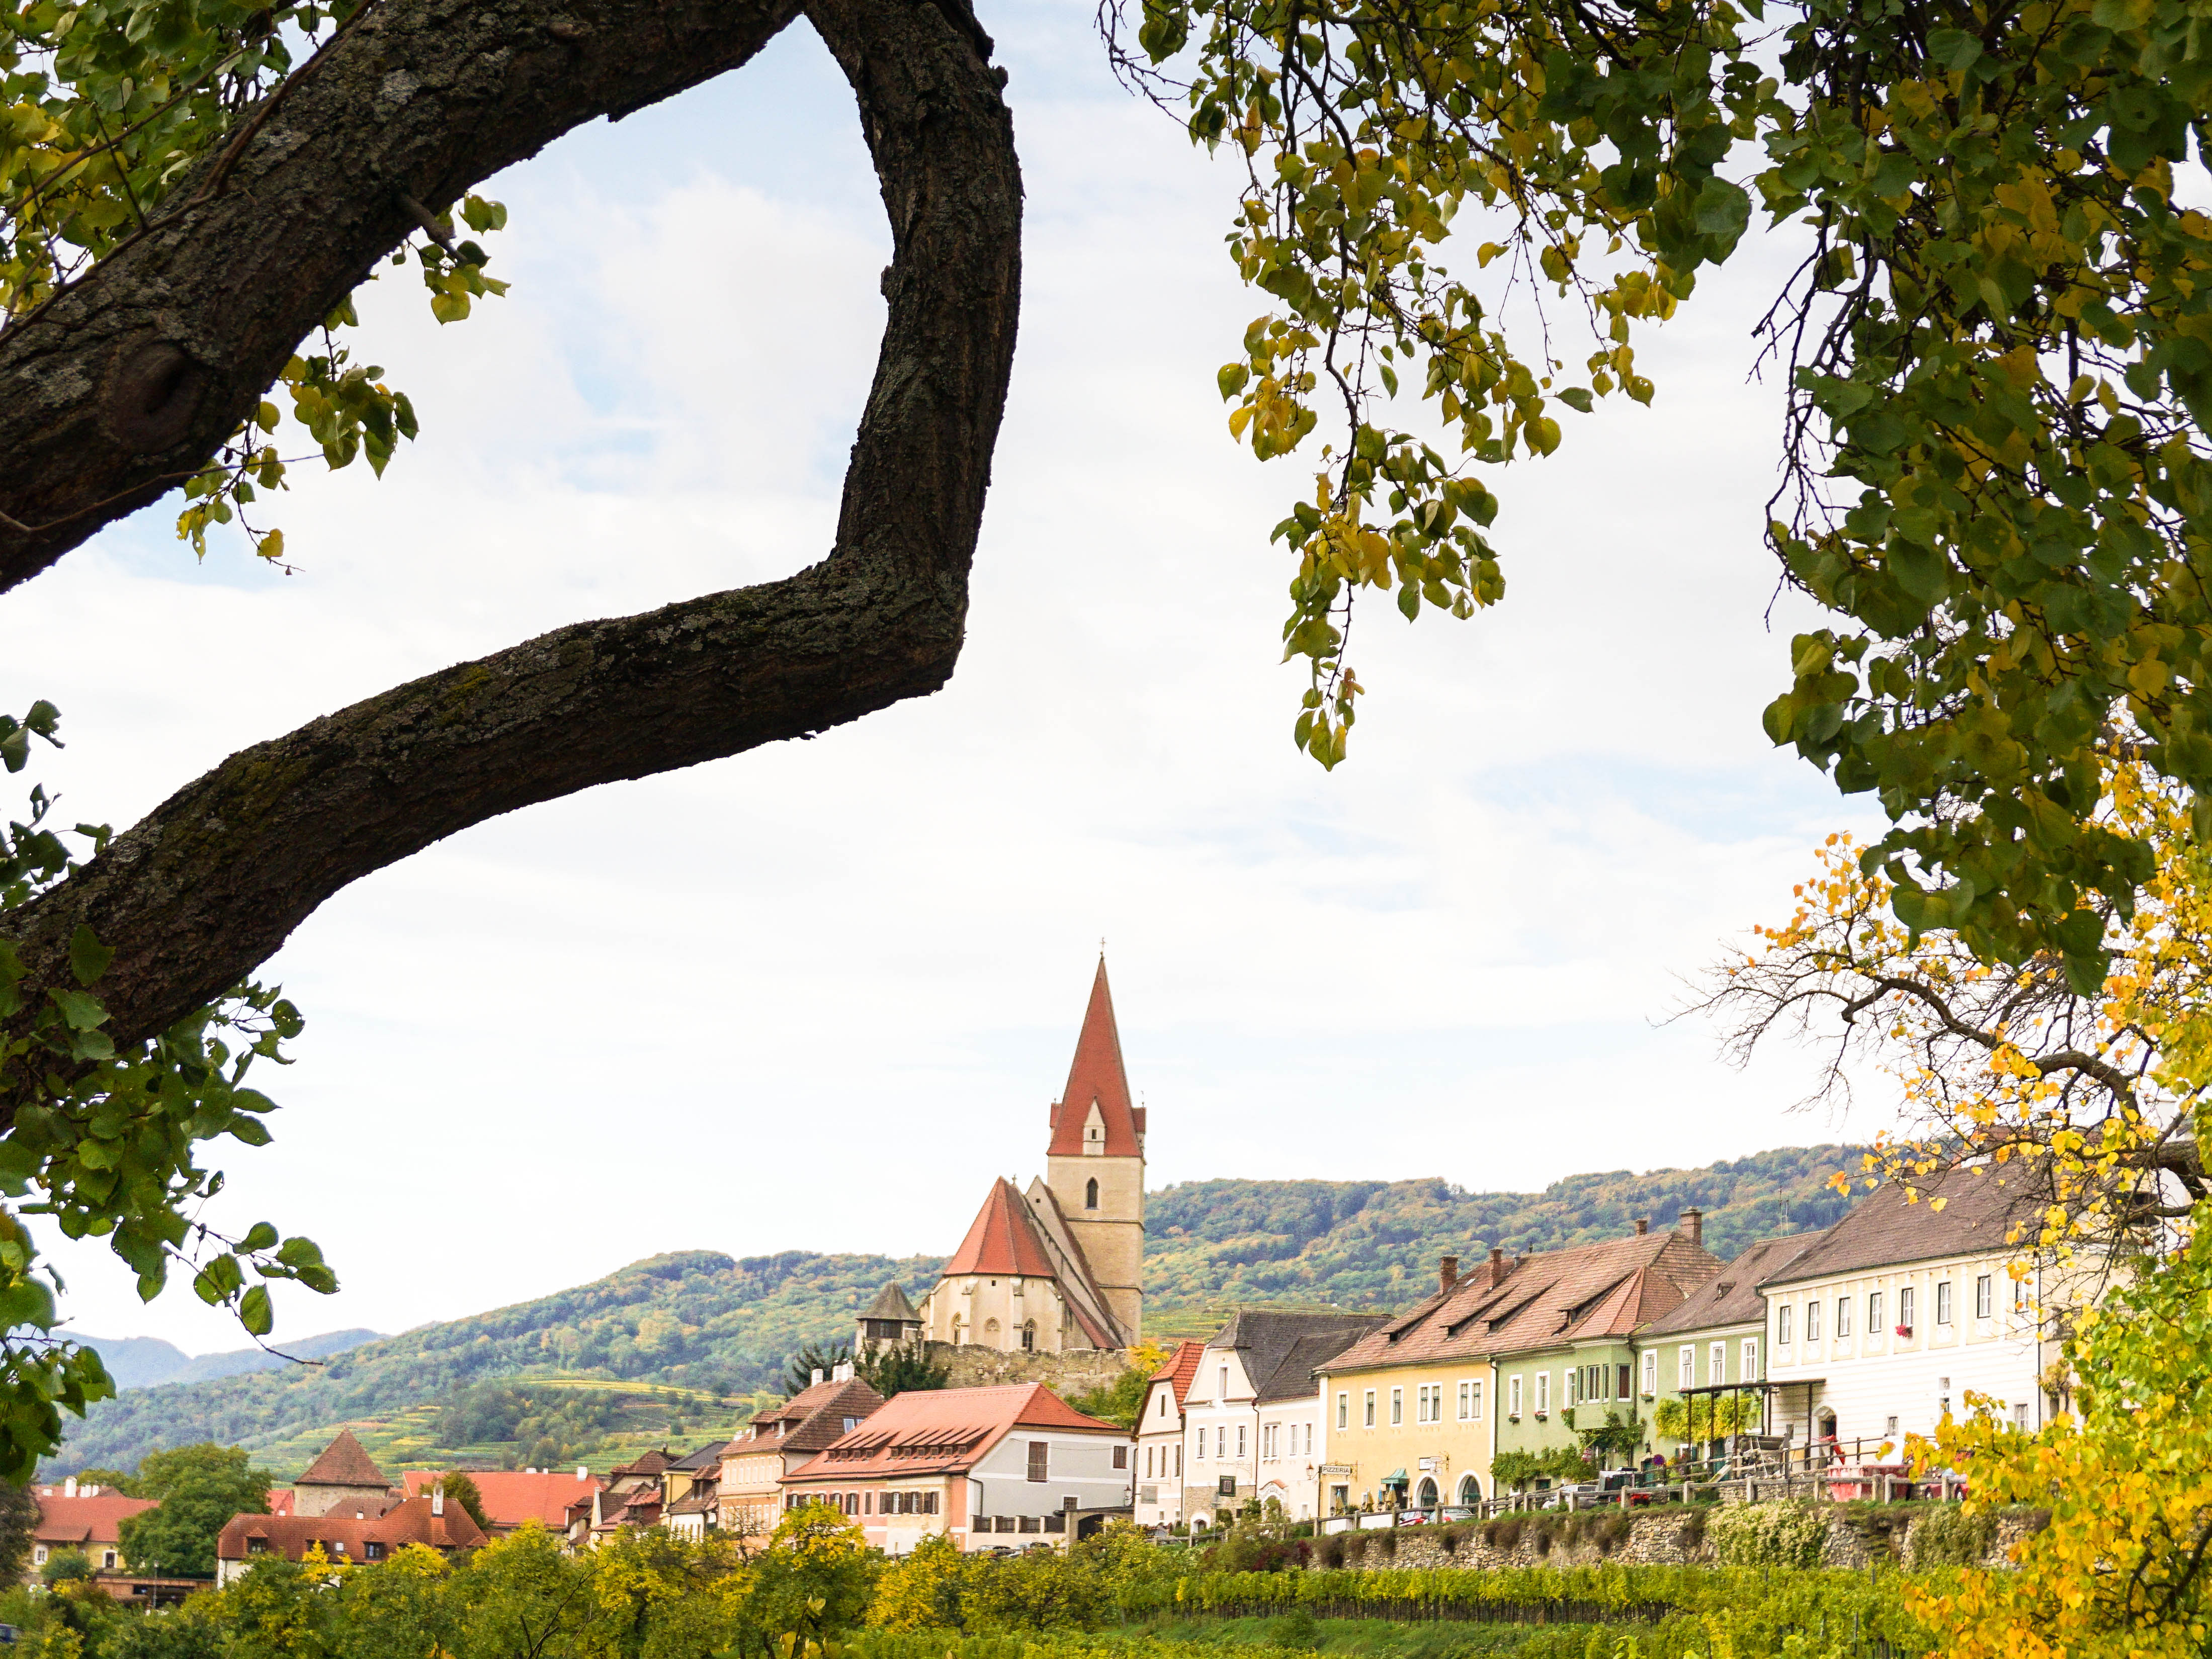 Austrian village with vineyards